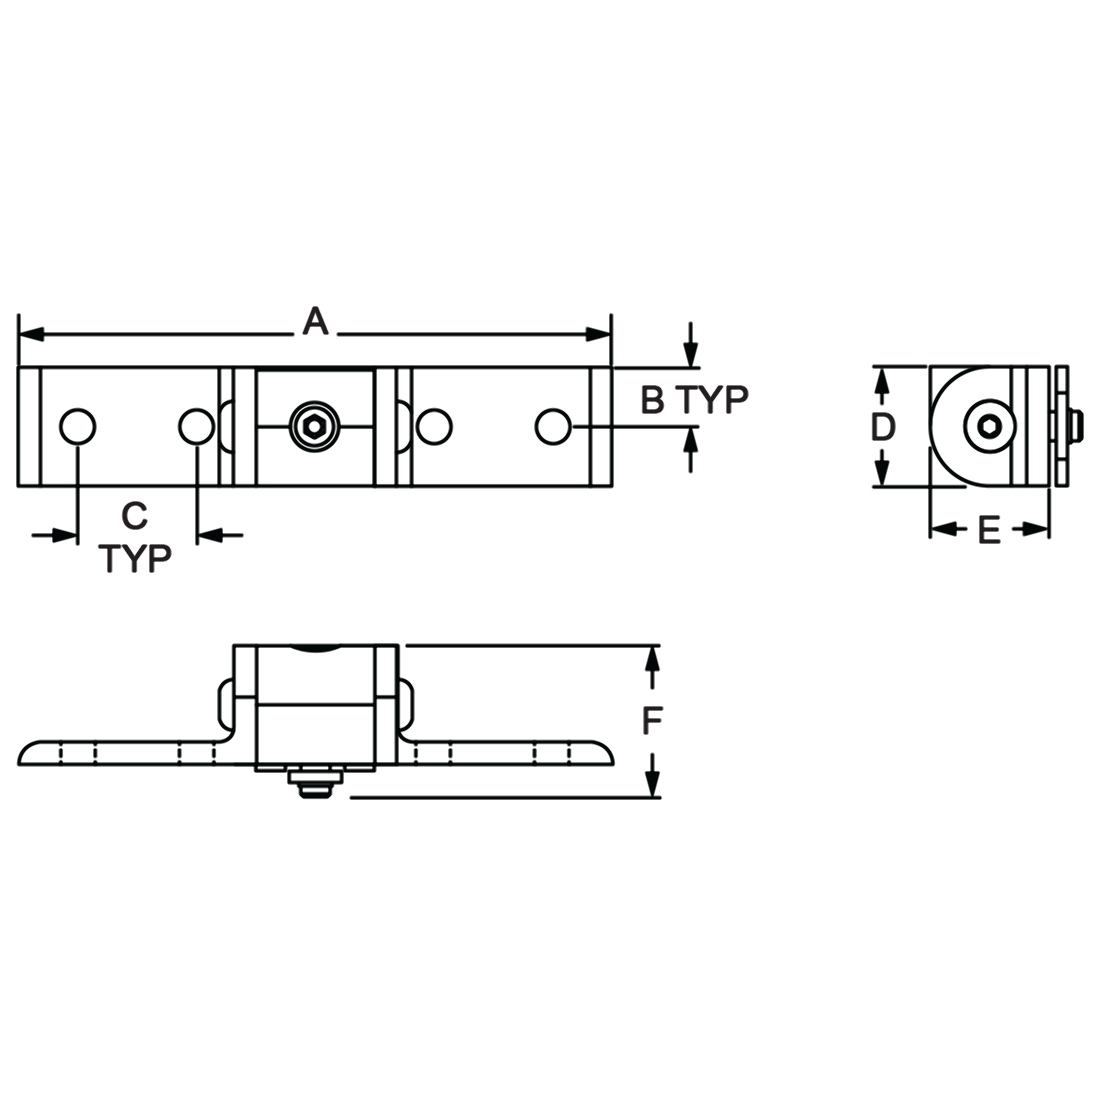 UpStart Components Brand 5304506471 Refrigerator Door Handle Replacement for Frigidaire LFTR1814LBJ Refrigerator Compatible with 5304506471 Black Door Handle